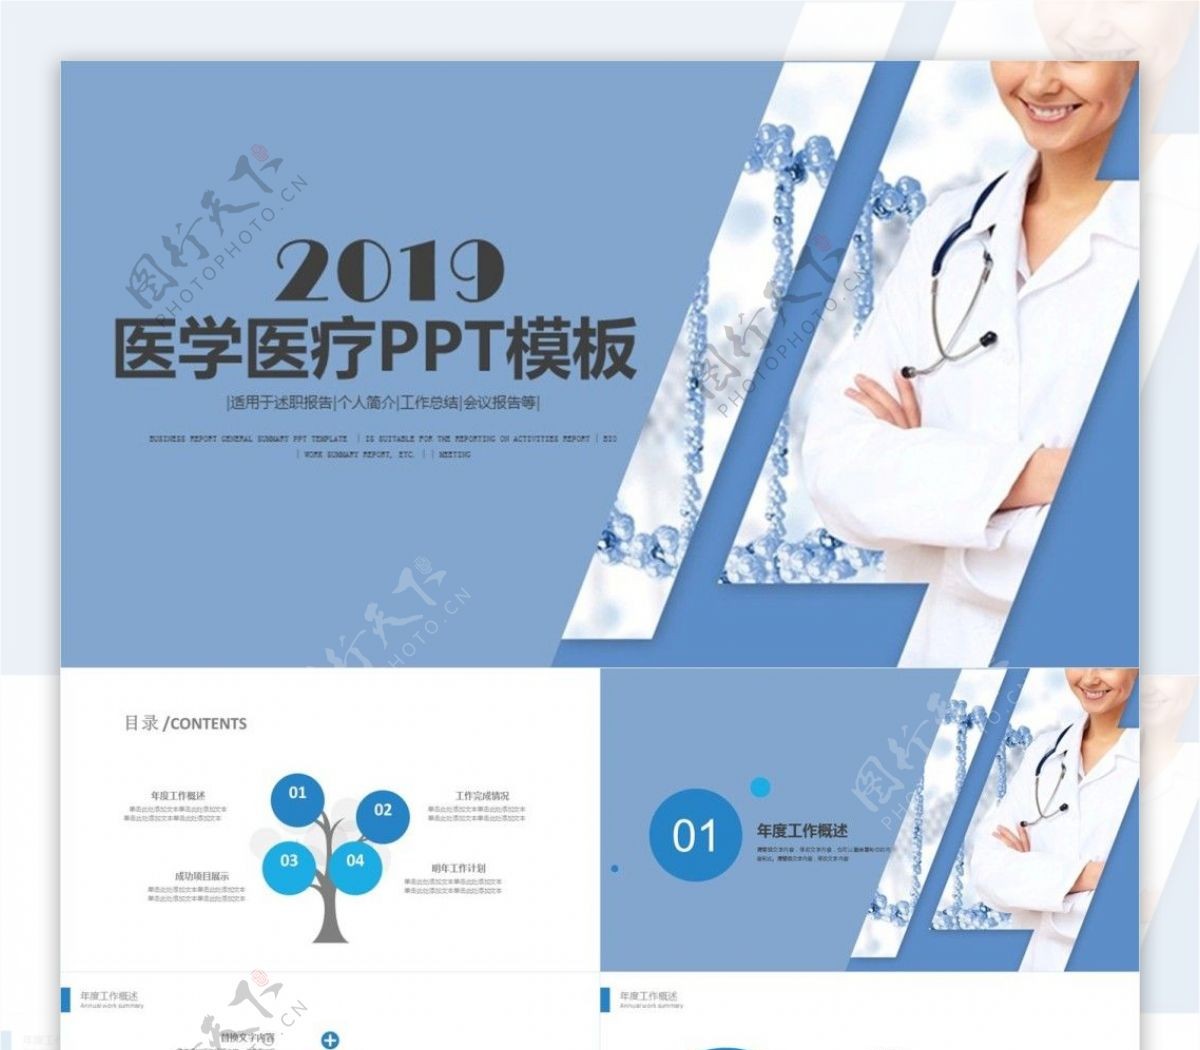 2019蓝色大气医学医疗PPT模板